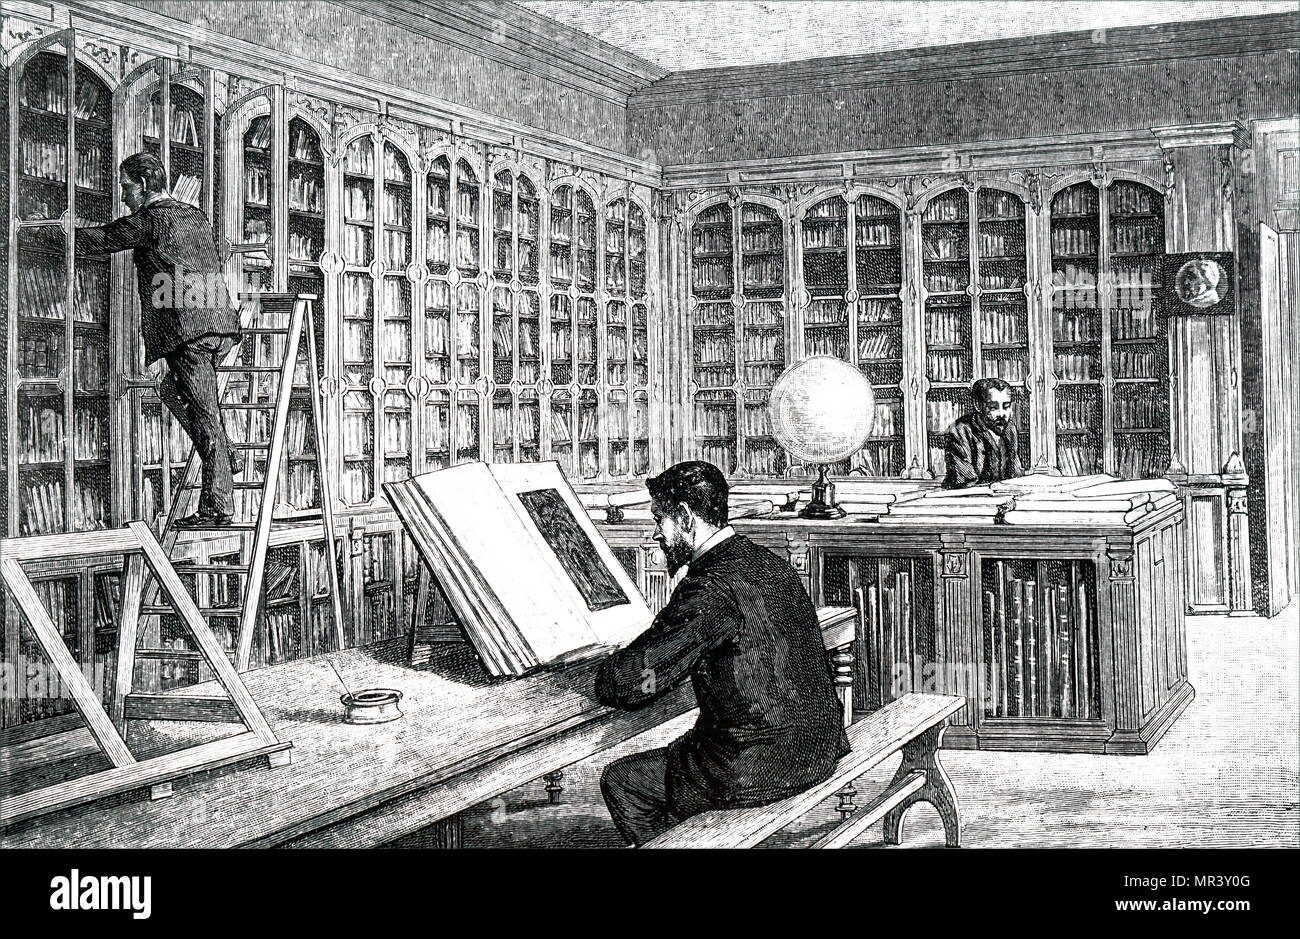 Abbildung: Darstellung von Louis Pasteur studieren in der Bibliothek der École Normale Supérieure. Louis Pasteur (1822-1895), ein französischer Mikrobiologe, Biologe und Chemiker. Vom 19. Jahrhundert Stockfoto